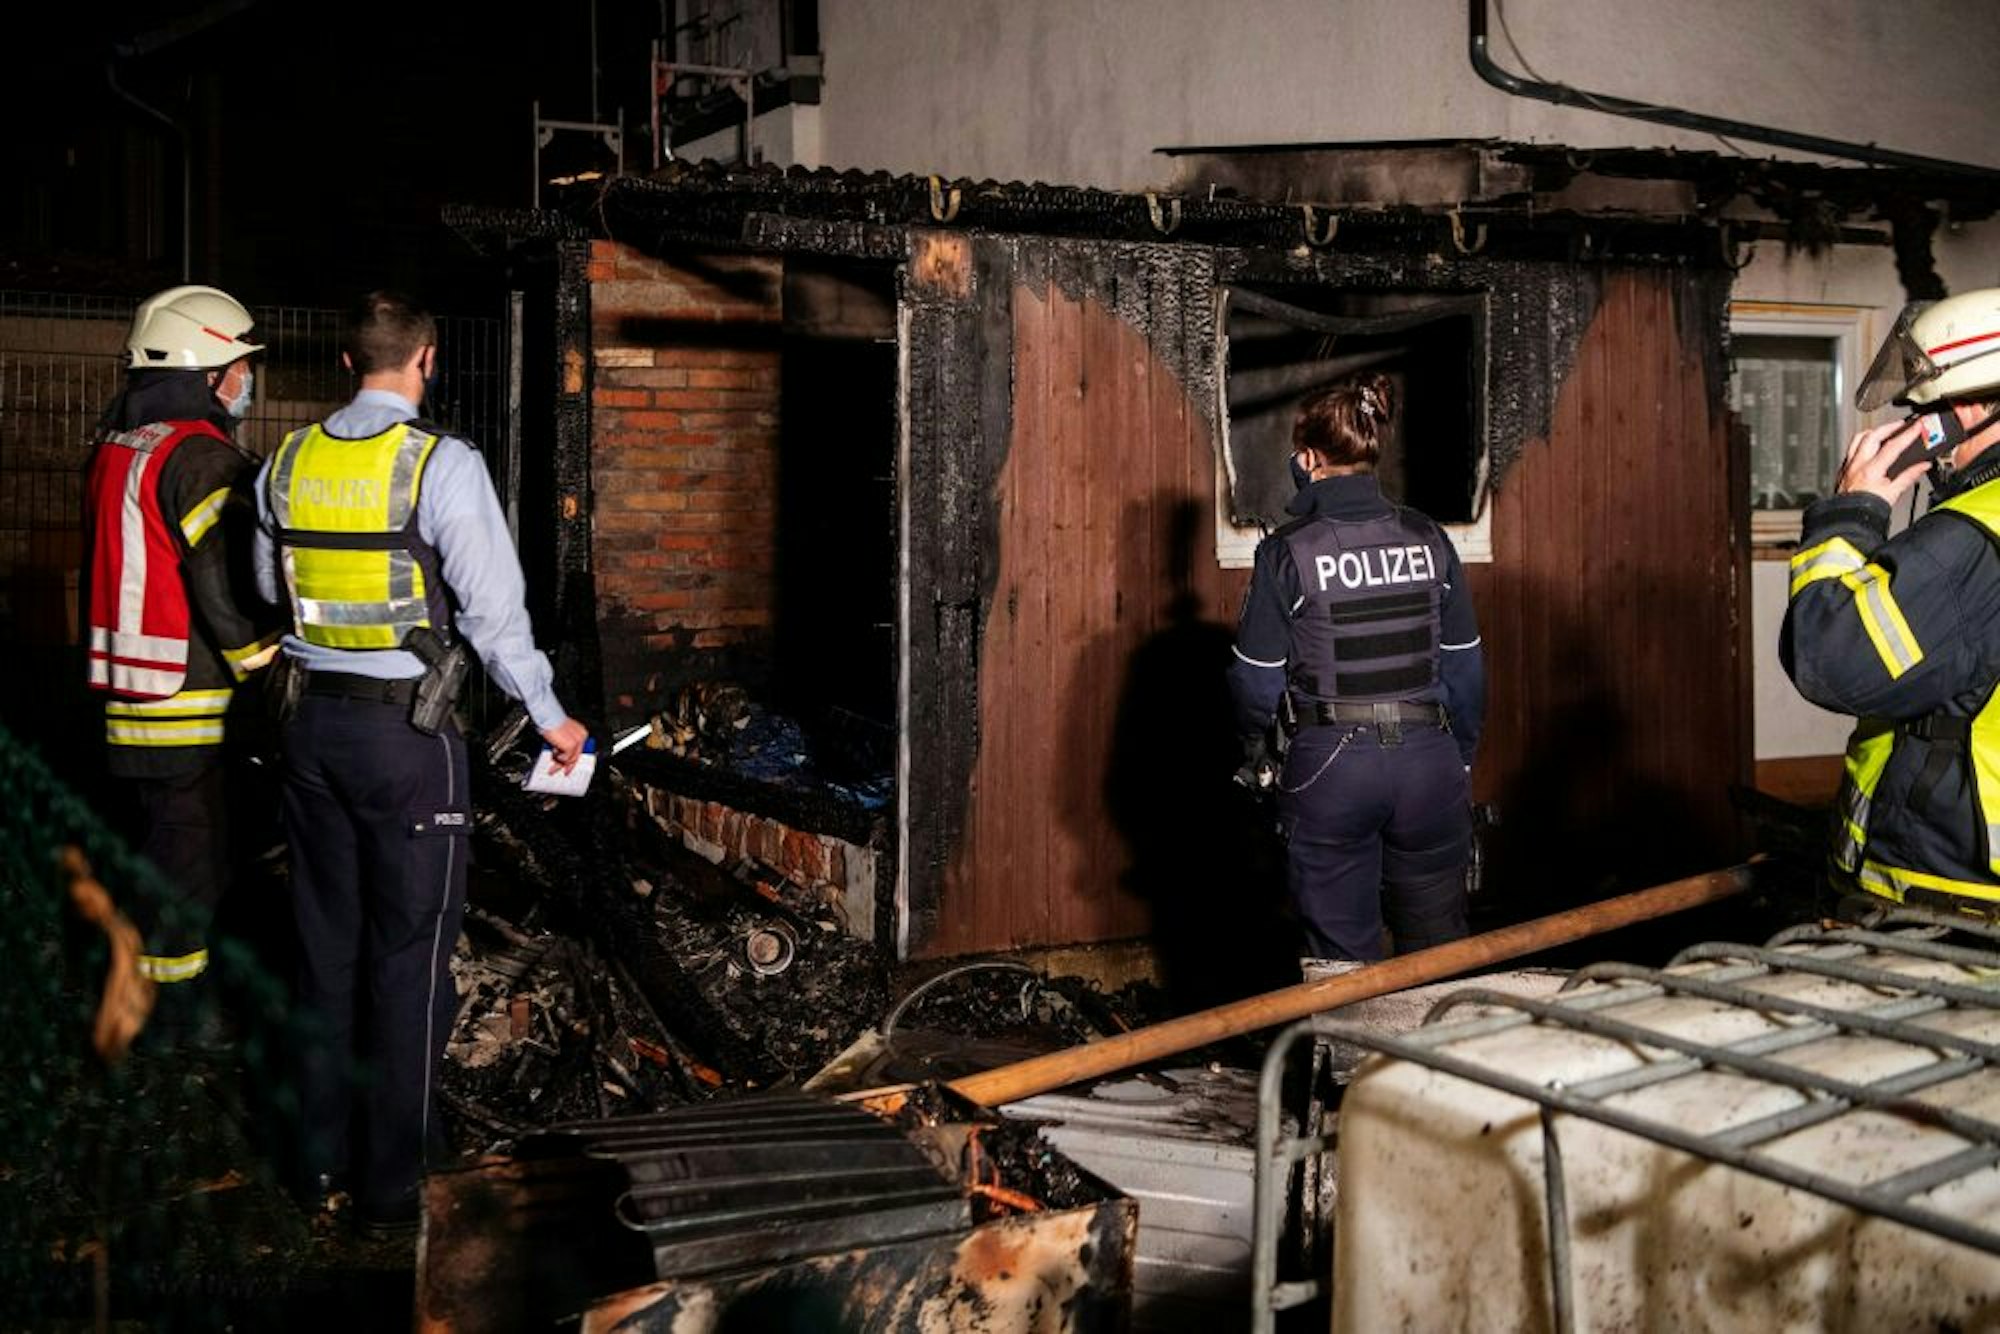 77 vorsätzlich gelegte Brände, wie hier in Iversheim, finden sich in der Kriminalitätsstatistik wieder.